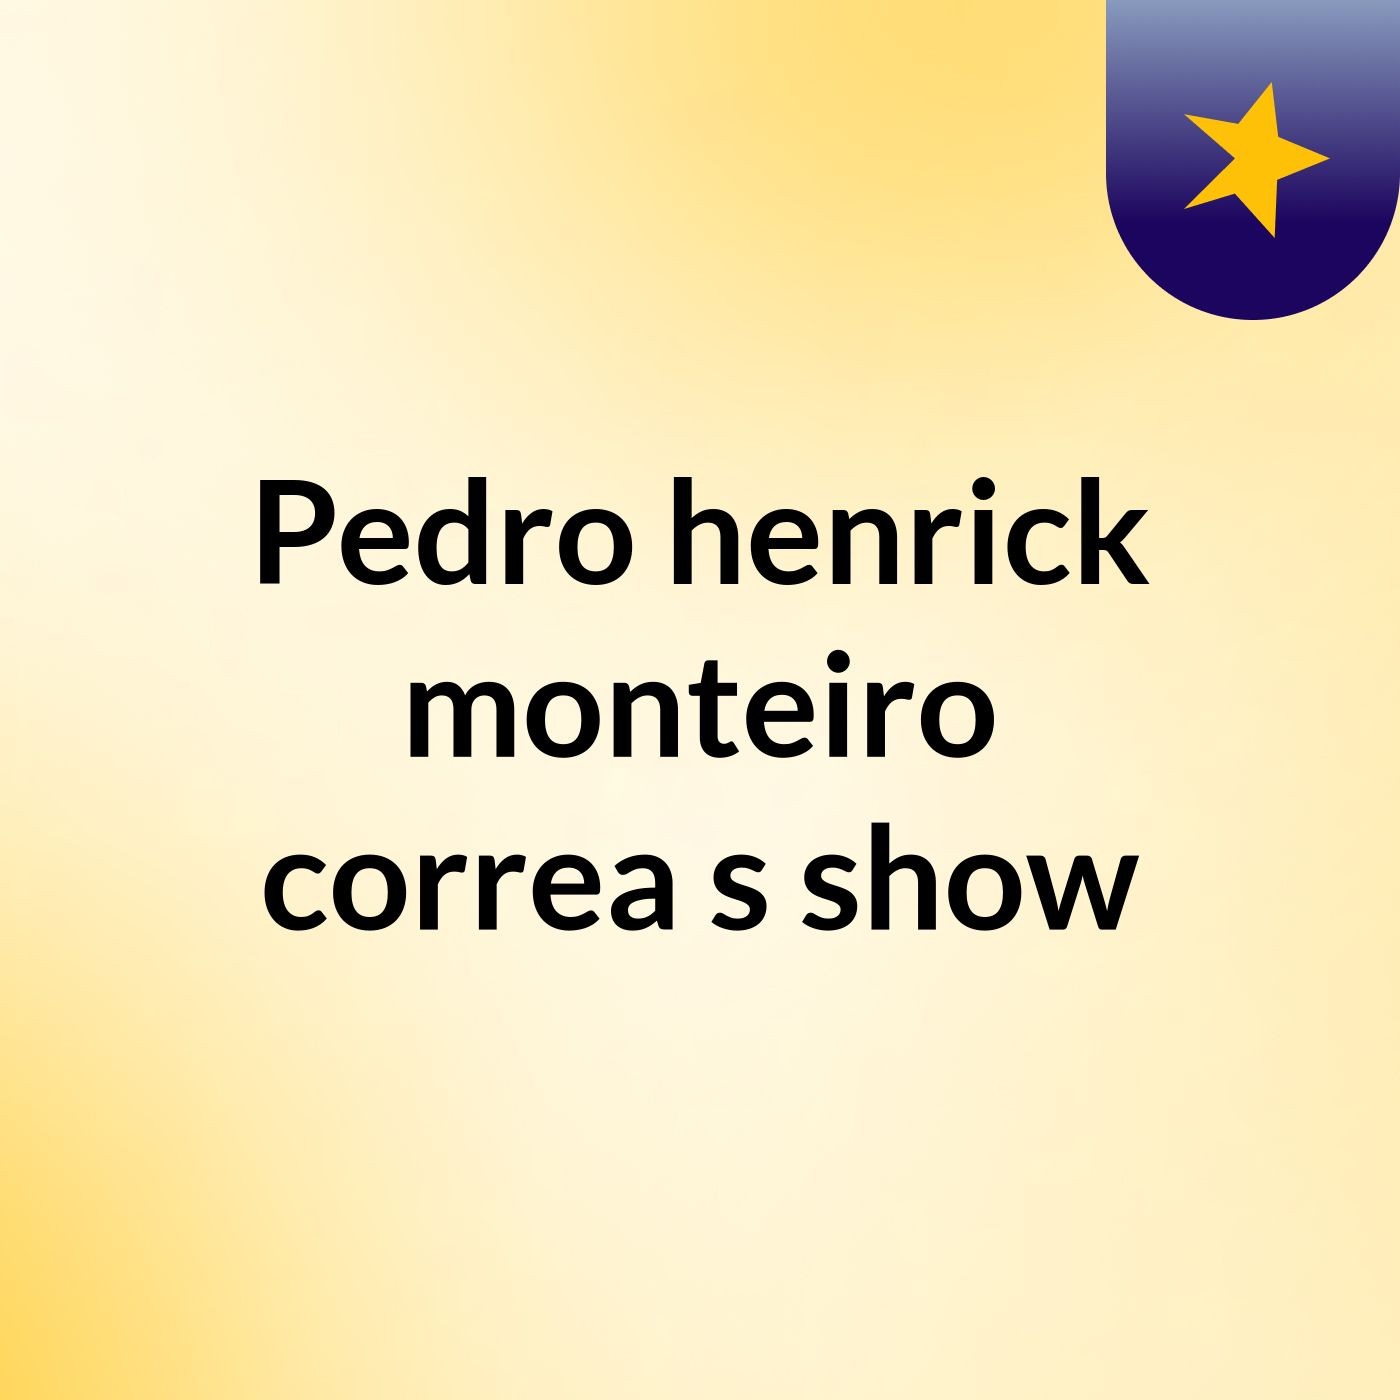 Pedro henrick monteiro correa's show